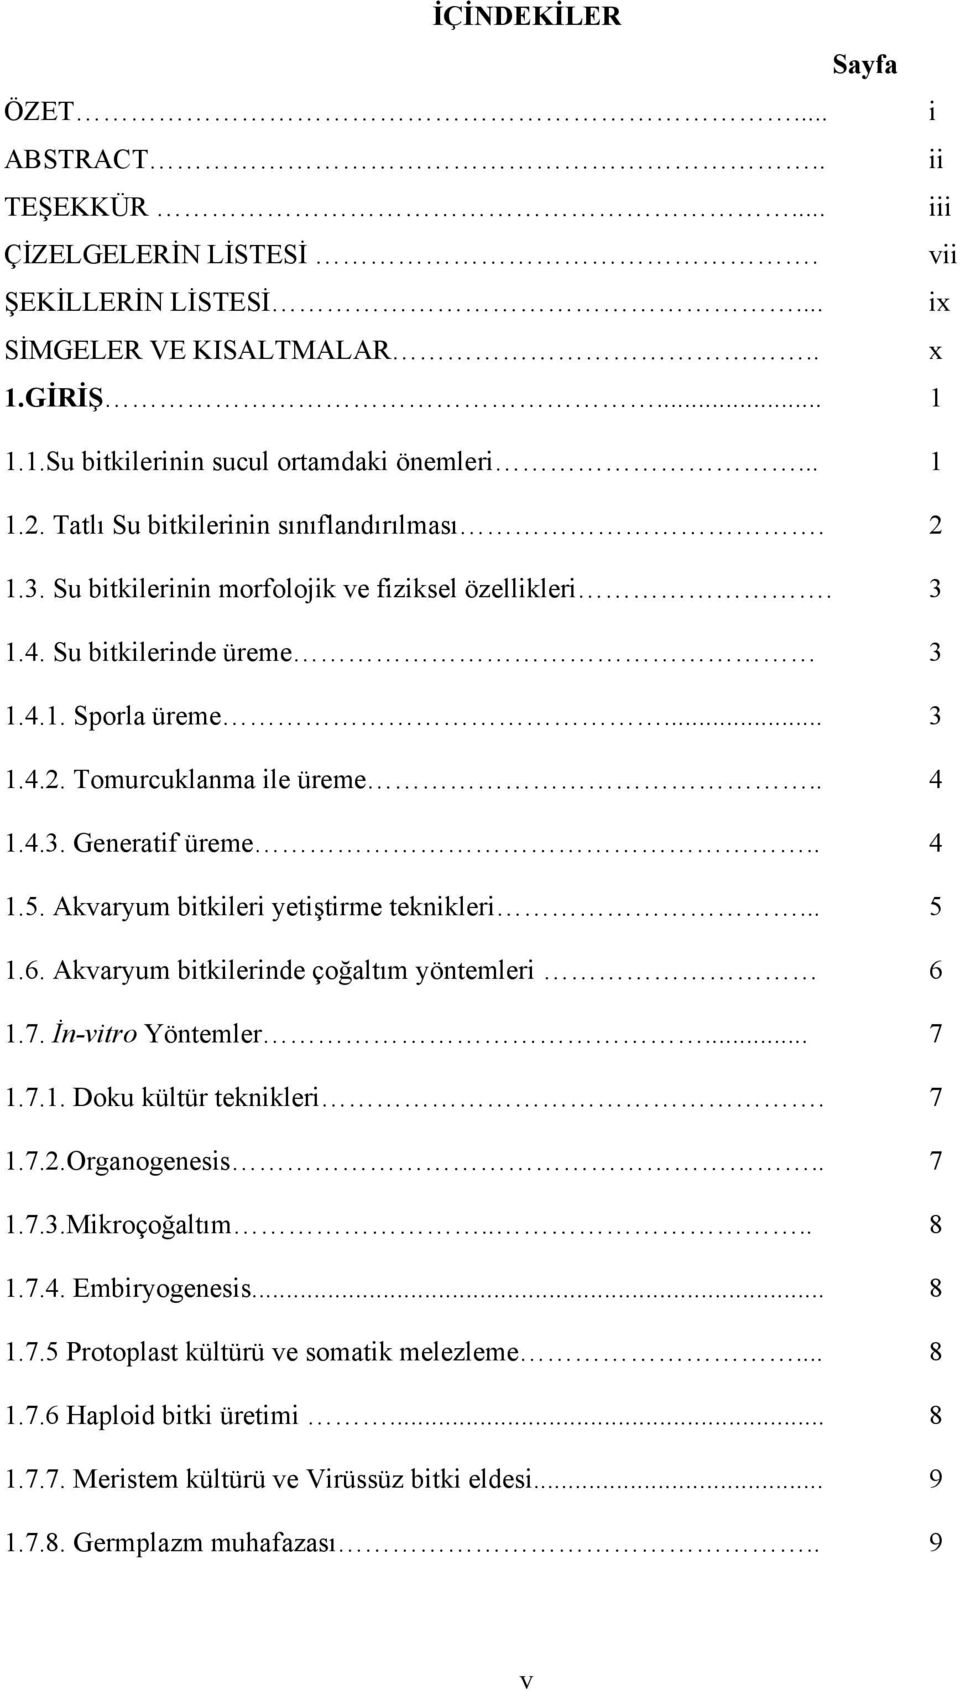 . 4 1.5. Akvaryum bitkileri yetiştirme teknikleri... 5 1.6. Akvaryum bitkilerinde çoğaltım yöntemleri 6 1.7. İn-vitro Yöntemler... 7 1.7.1. Doku kültür teknikleri. 7 1.7.2.Organogenesis.. 7 1.7.3.